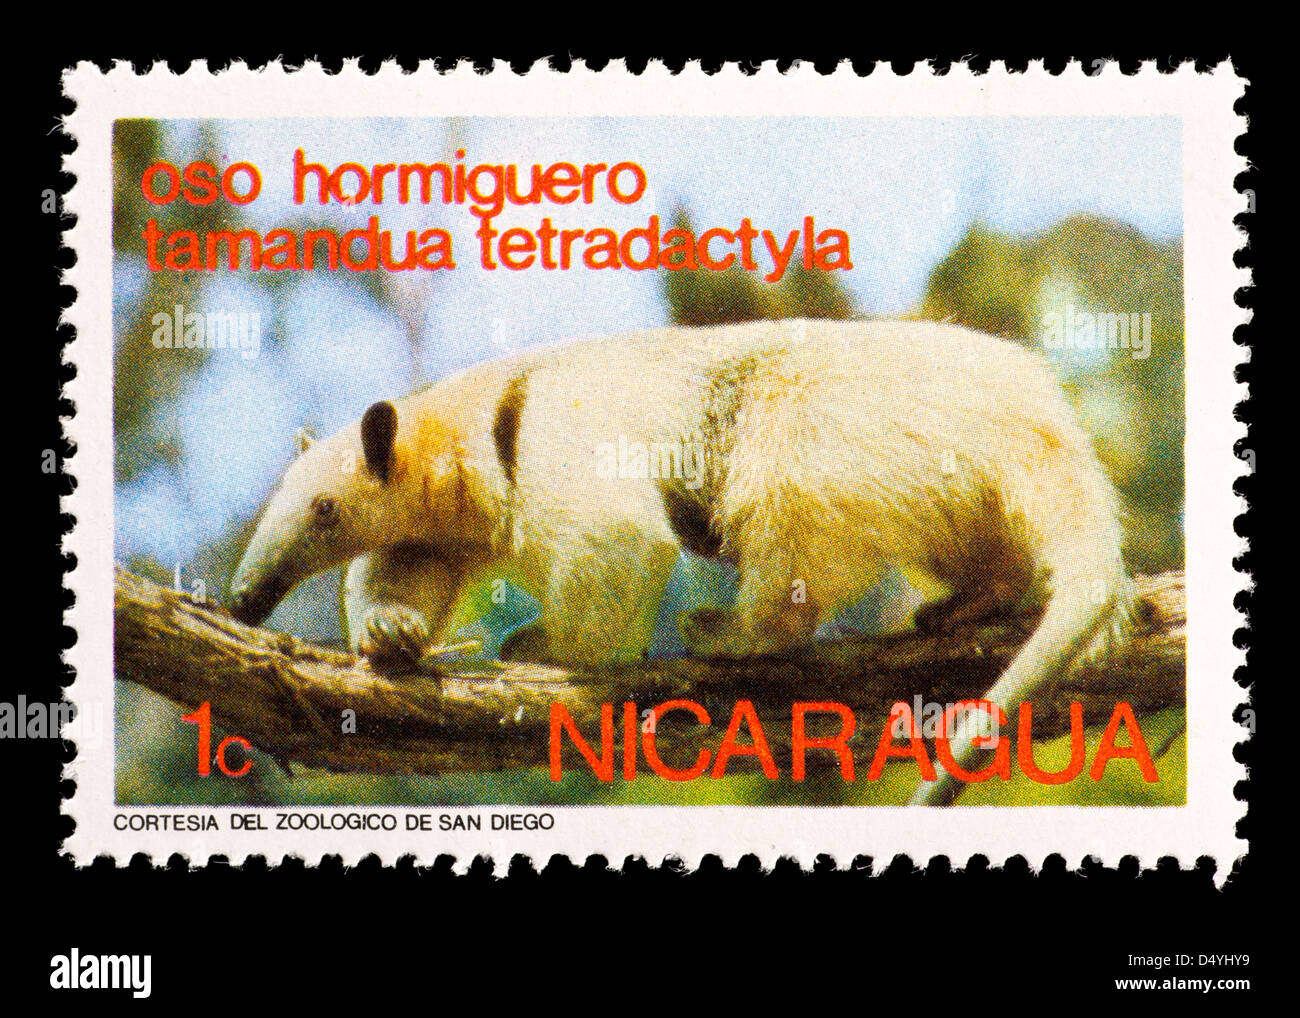 Postage stamp from Nicaragua depicting a  southern tamandua or collared anteater (Tamandua tetradactyla) Stock Photo